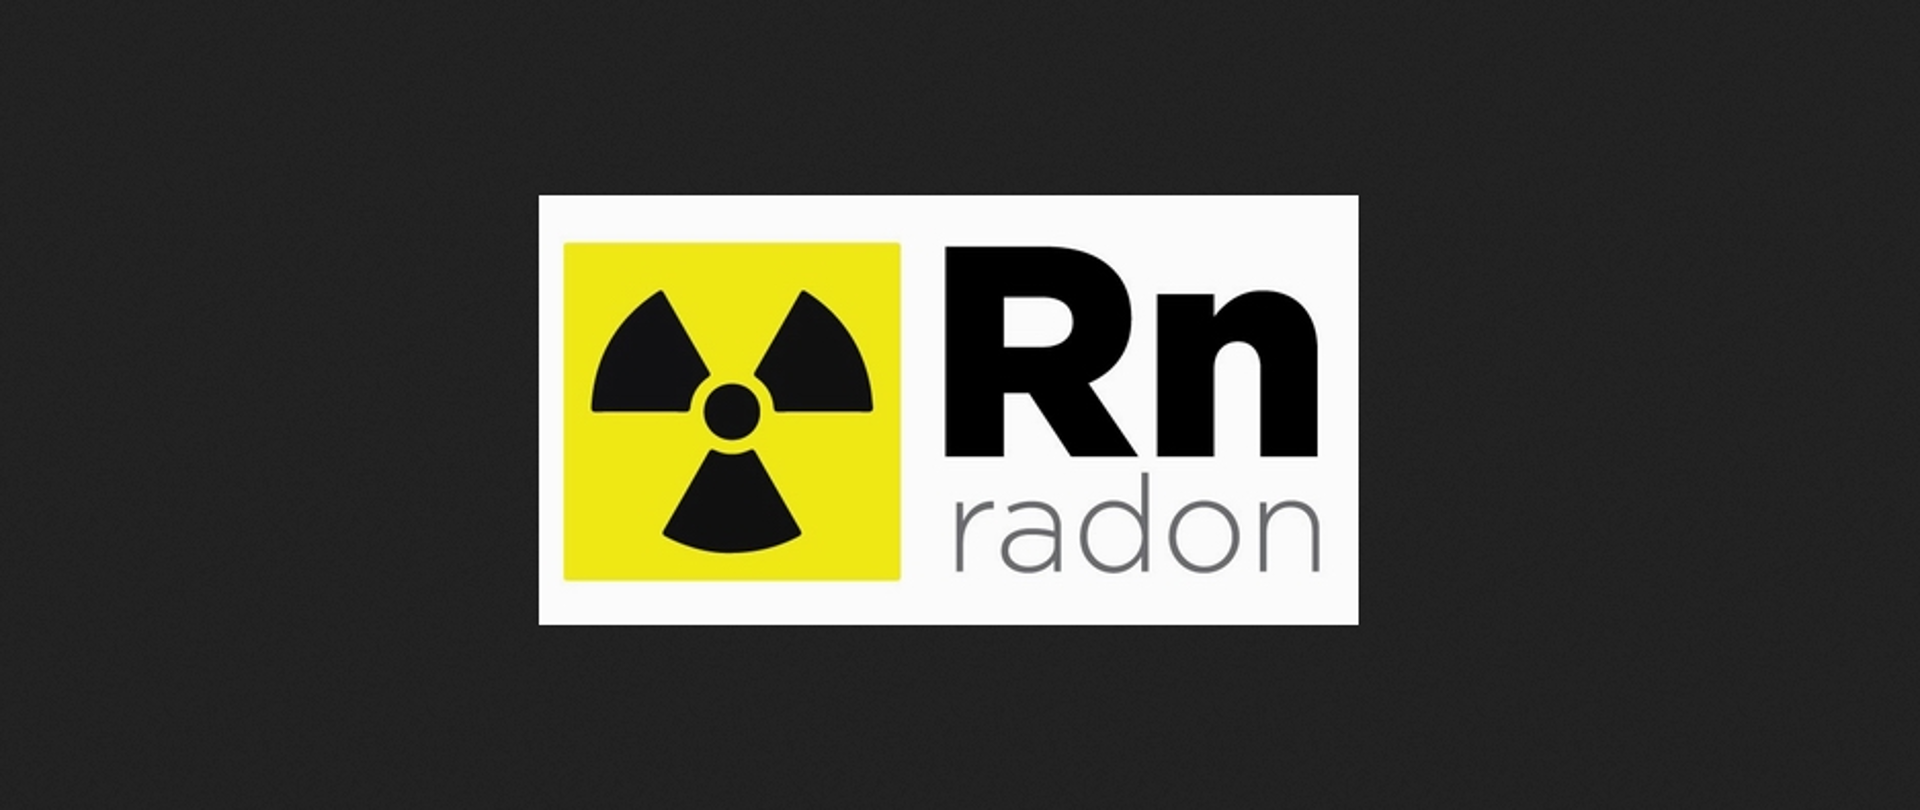 Grafika przedstawia znak radioaktywności. Tuż obok znajduje się symbol Rn oraz napis radon.